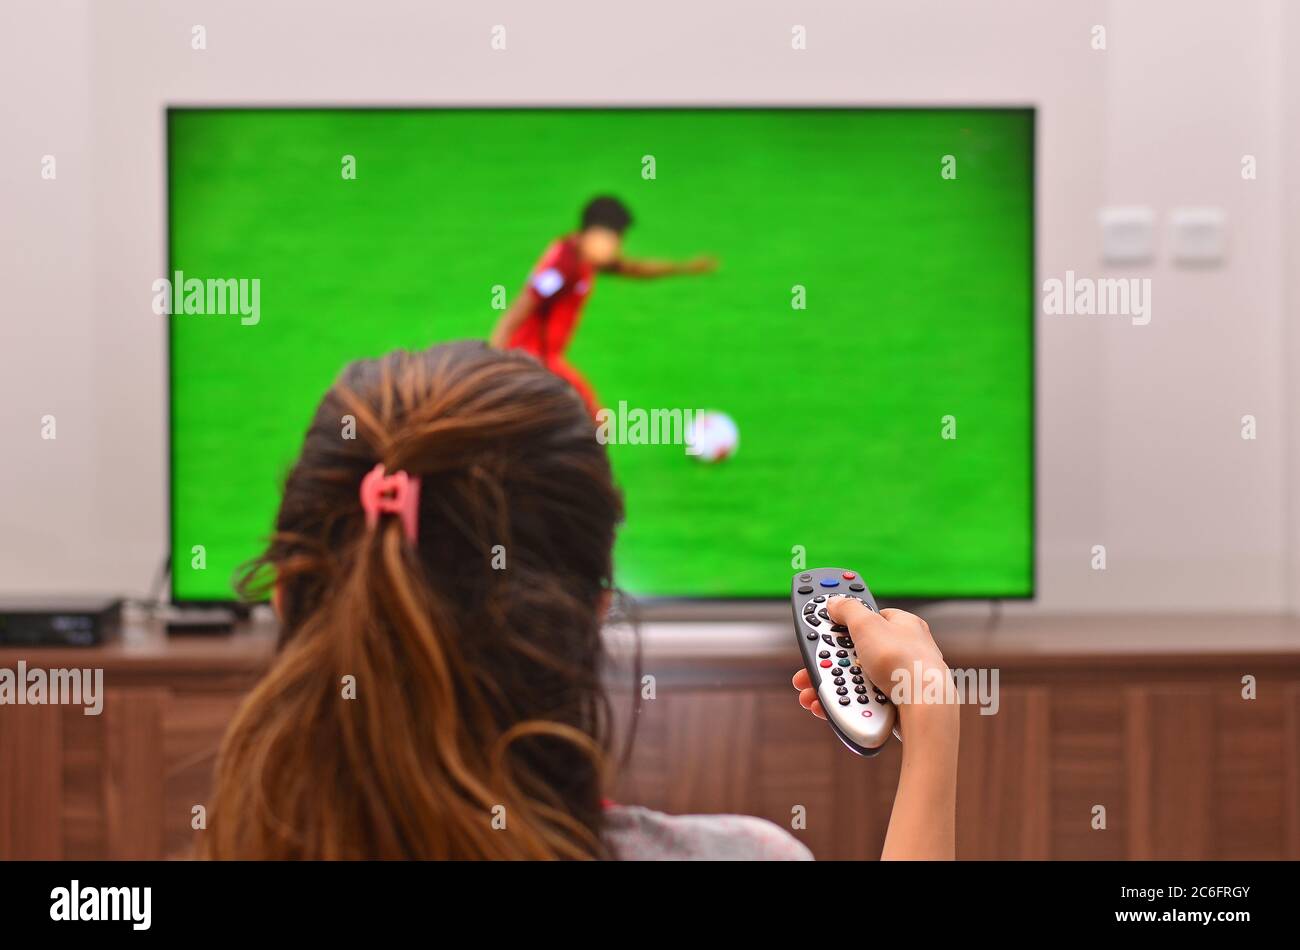 Les femmes regardent un match de football à la télévision et utilisent la télécommande Banque D'Images